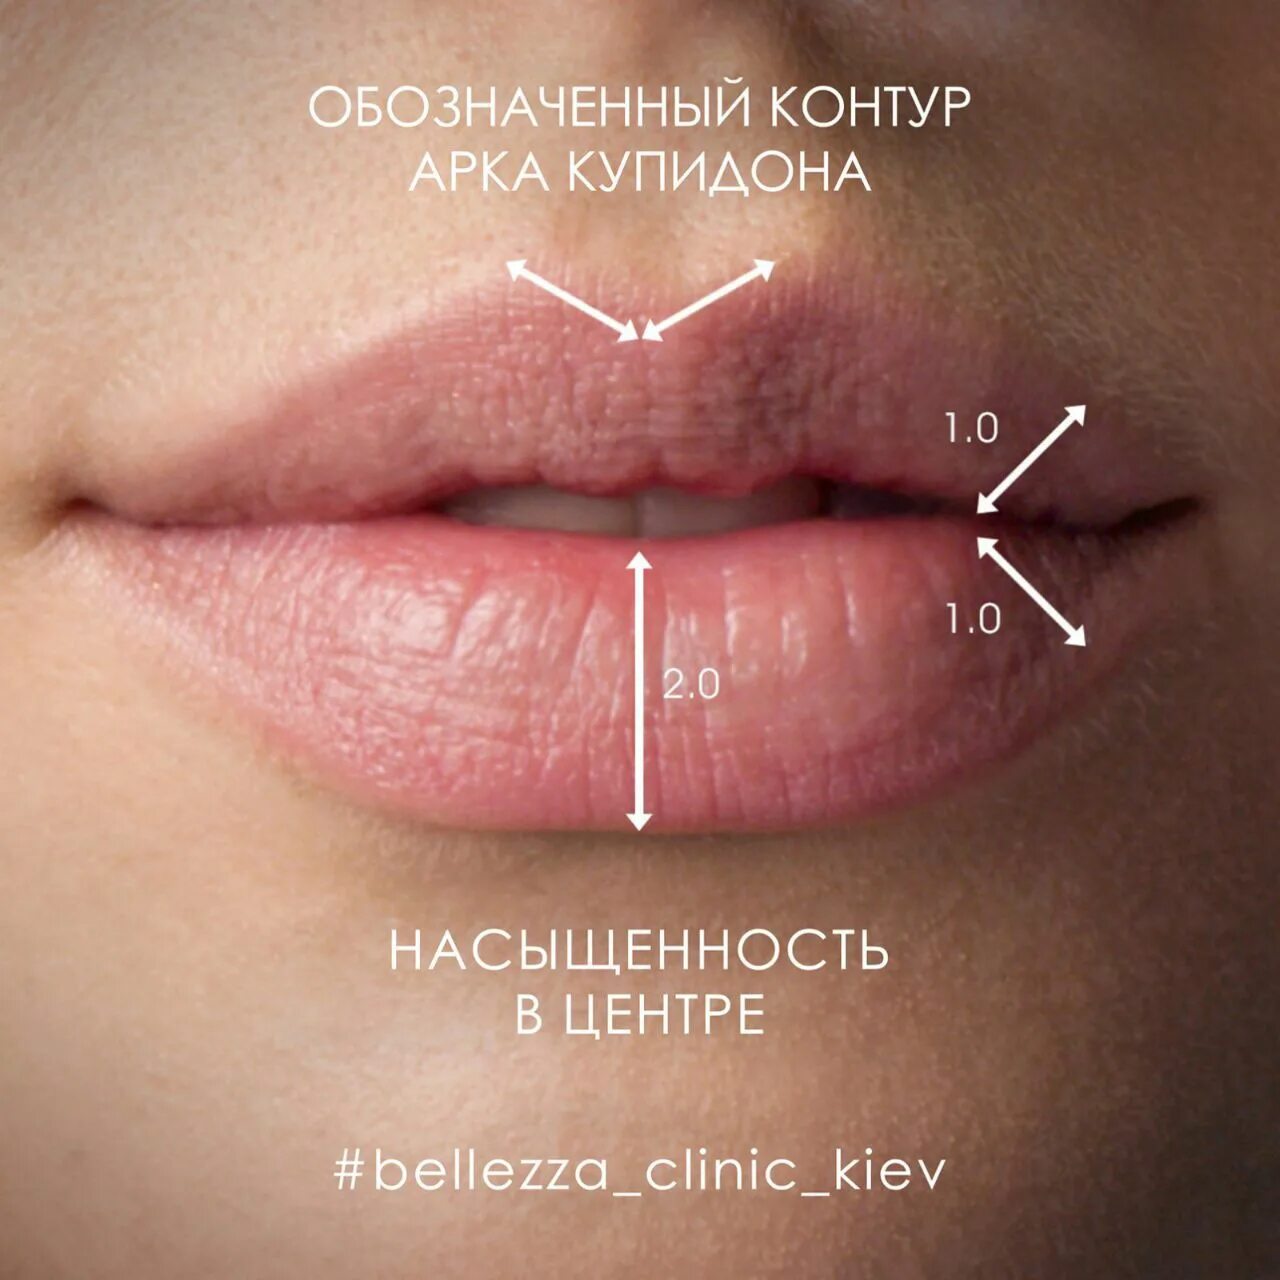 Увеличение губ гиалуроновой кислотой. Контурная пластика губ алкоголь. Перед увеличением губ нельзя пить